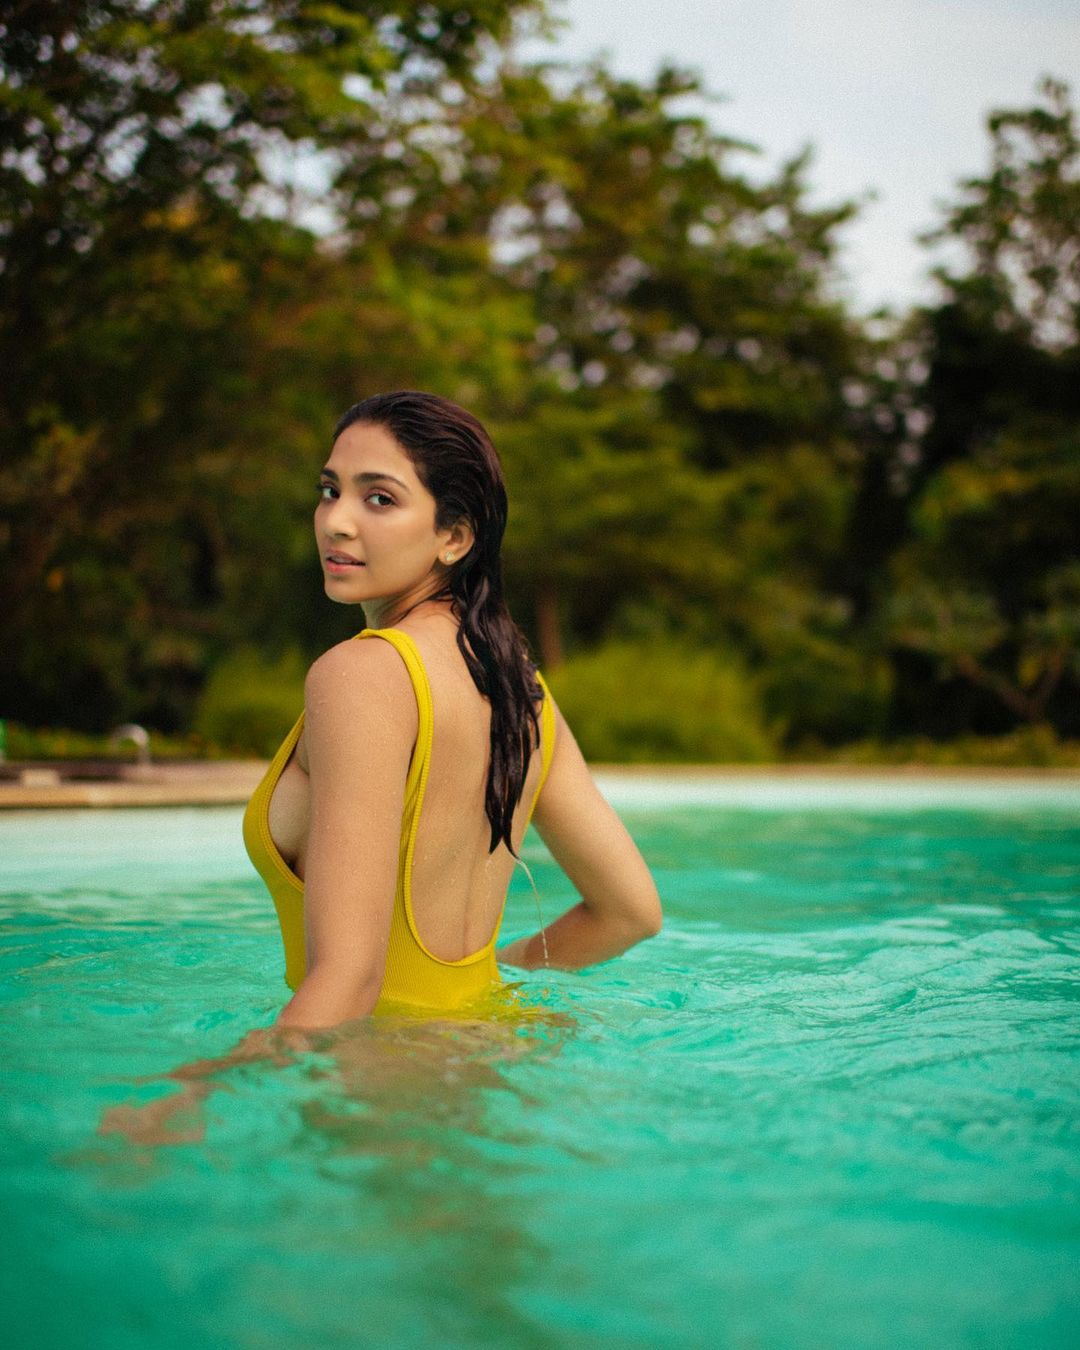 yogita bihani yellow swimsuit sideboob vikram vedha actress